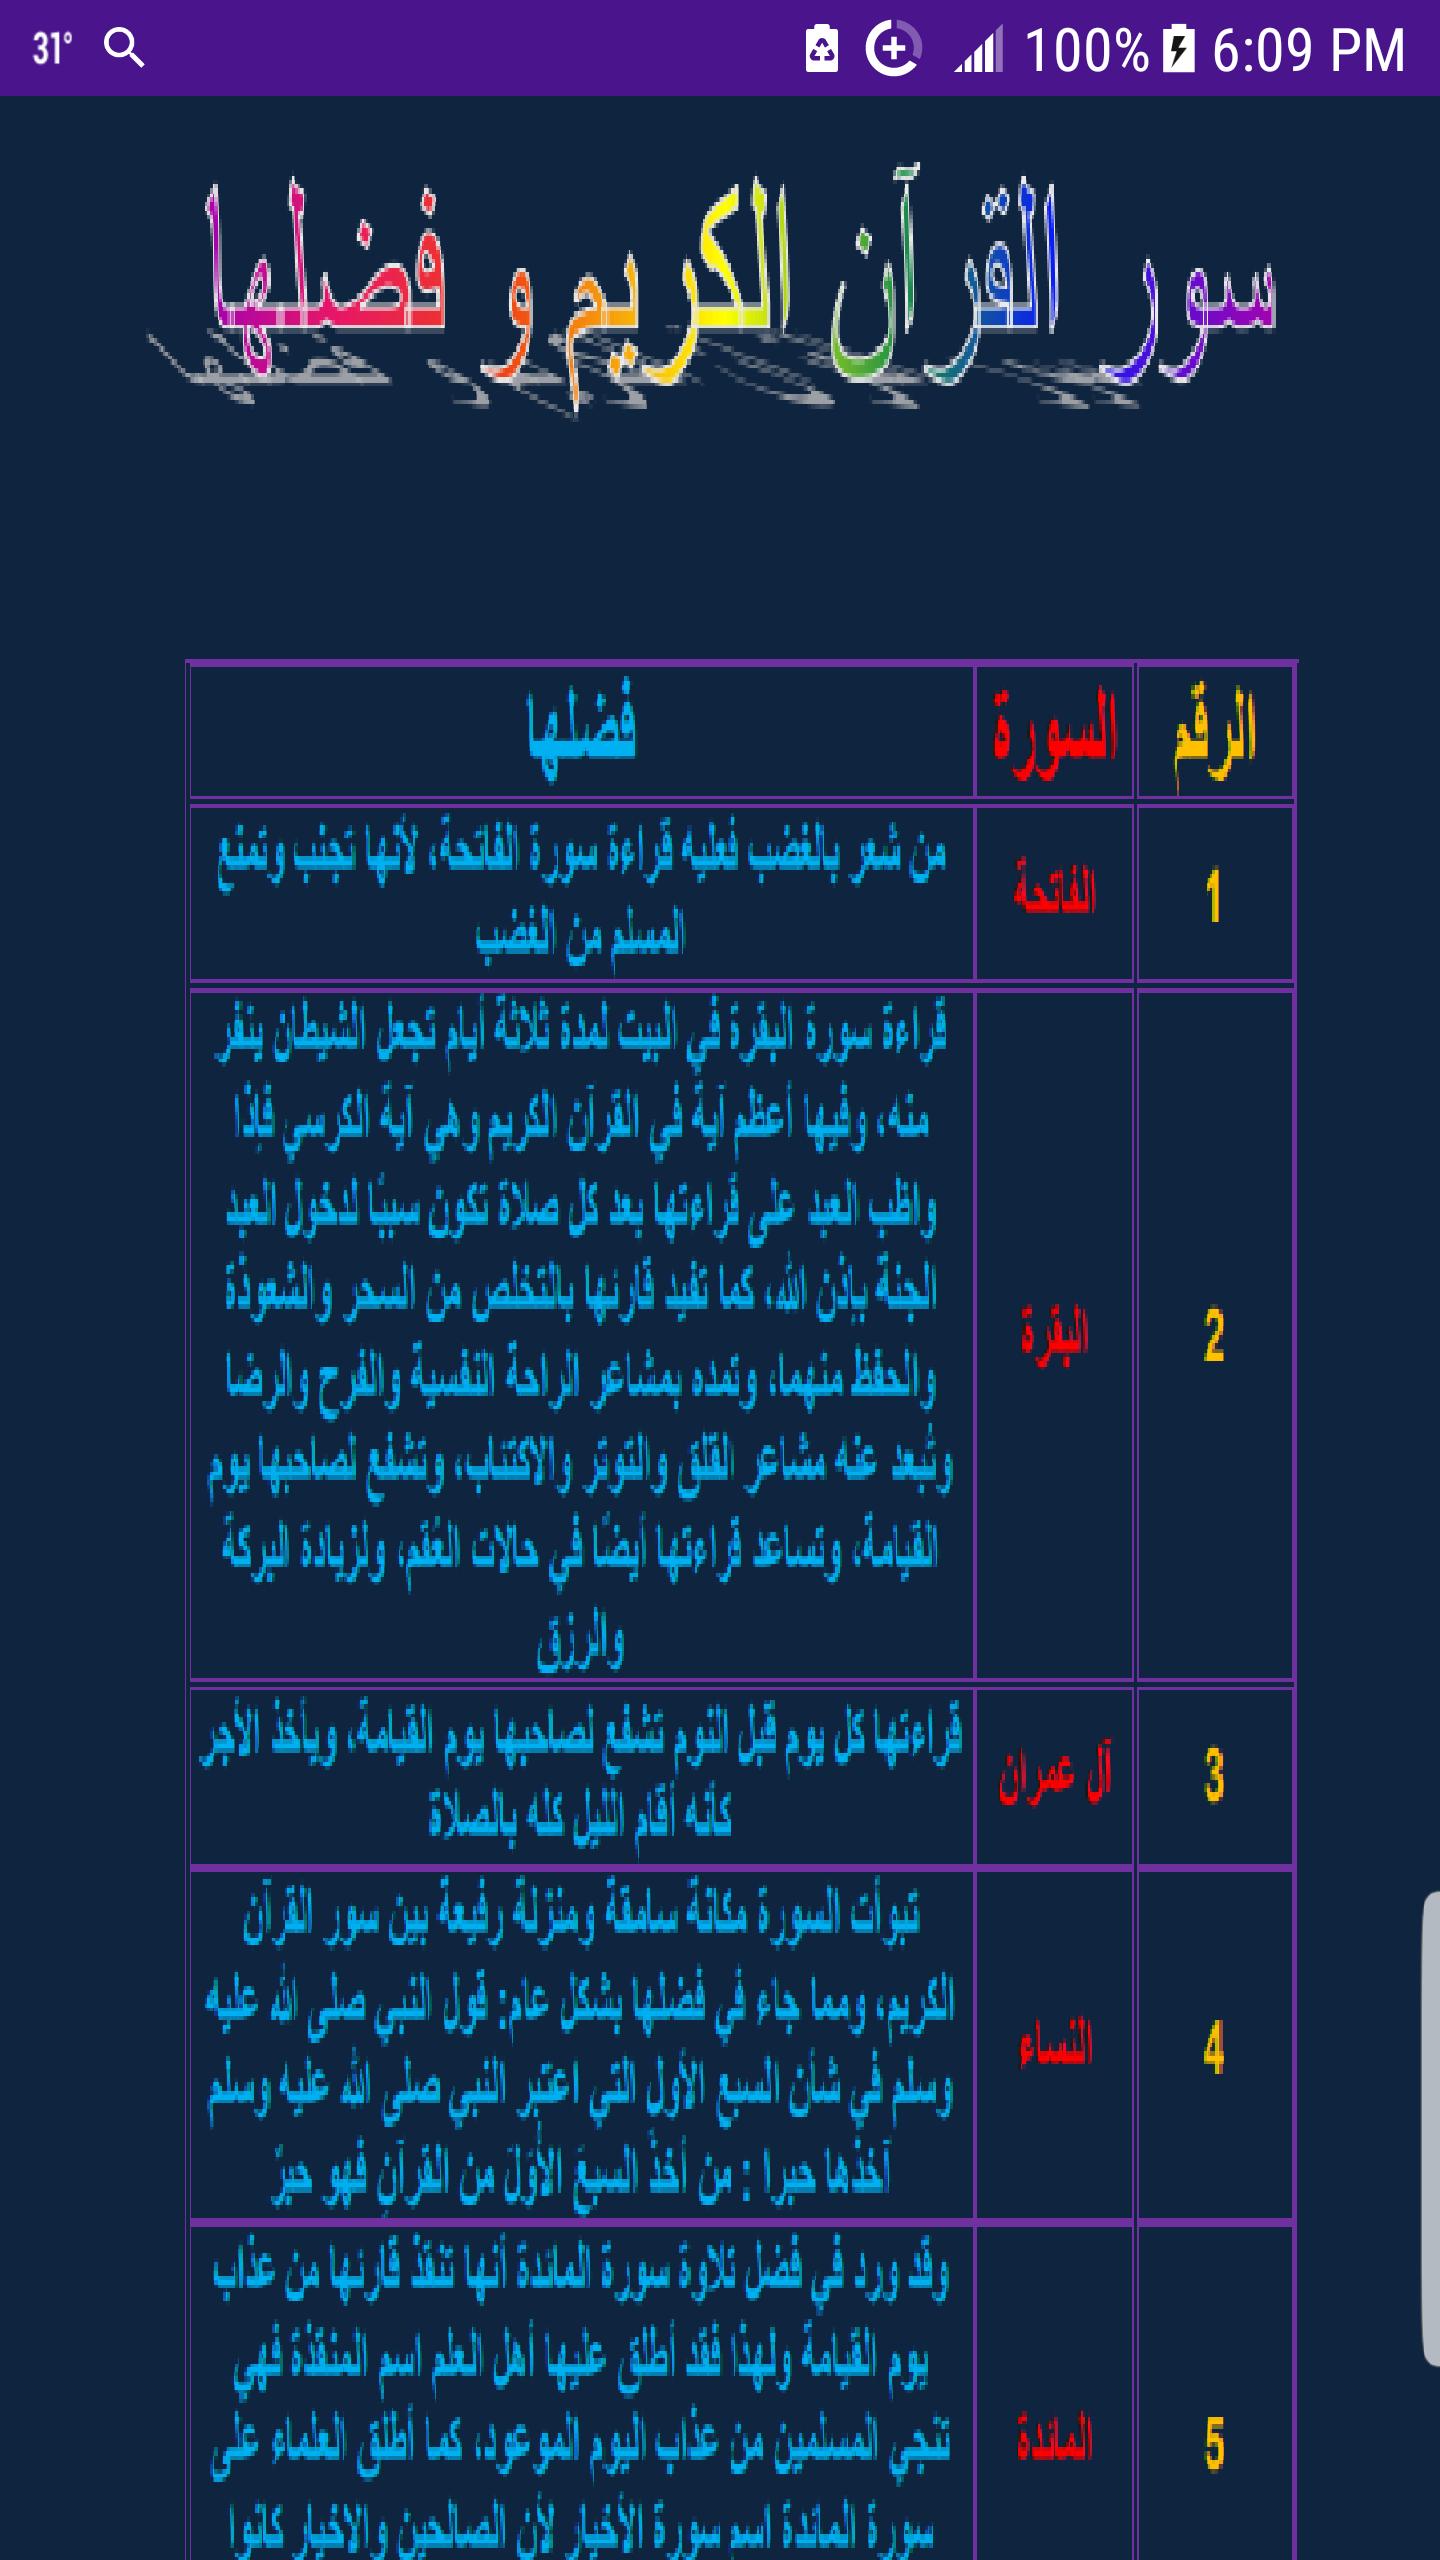 سور القرآن الكريم و فضلها for Android - APK Download